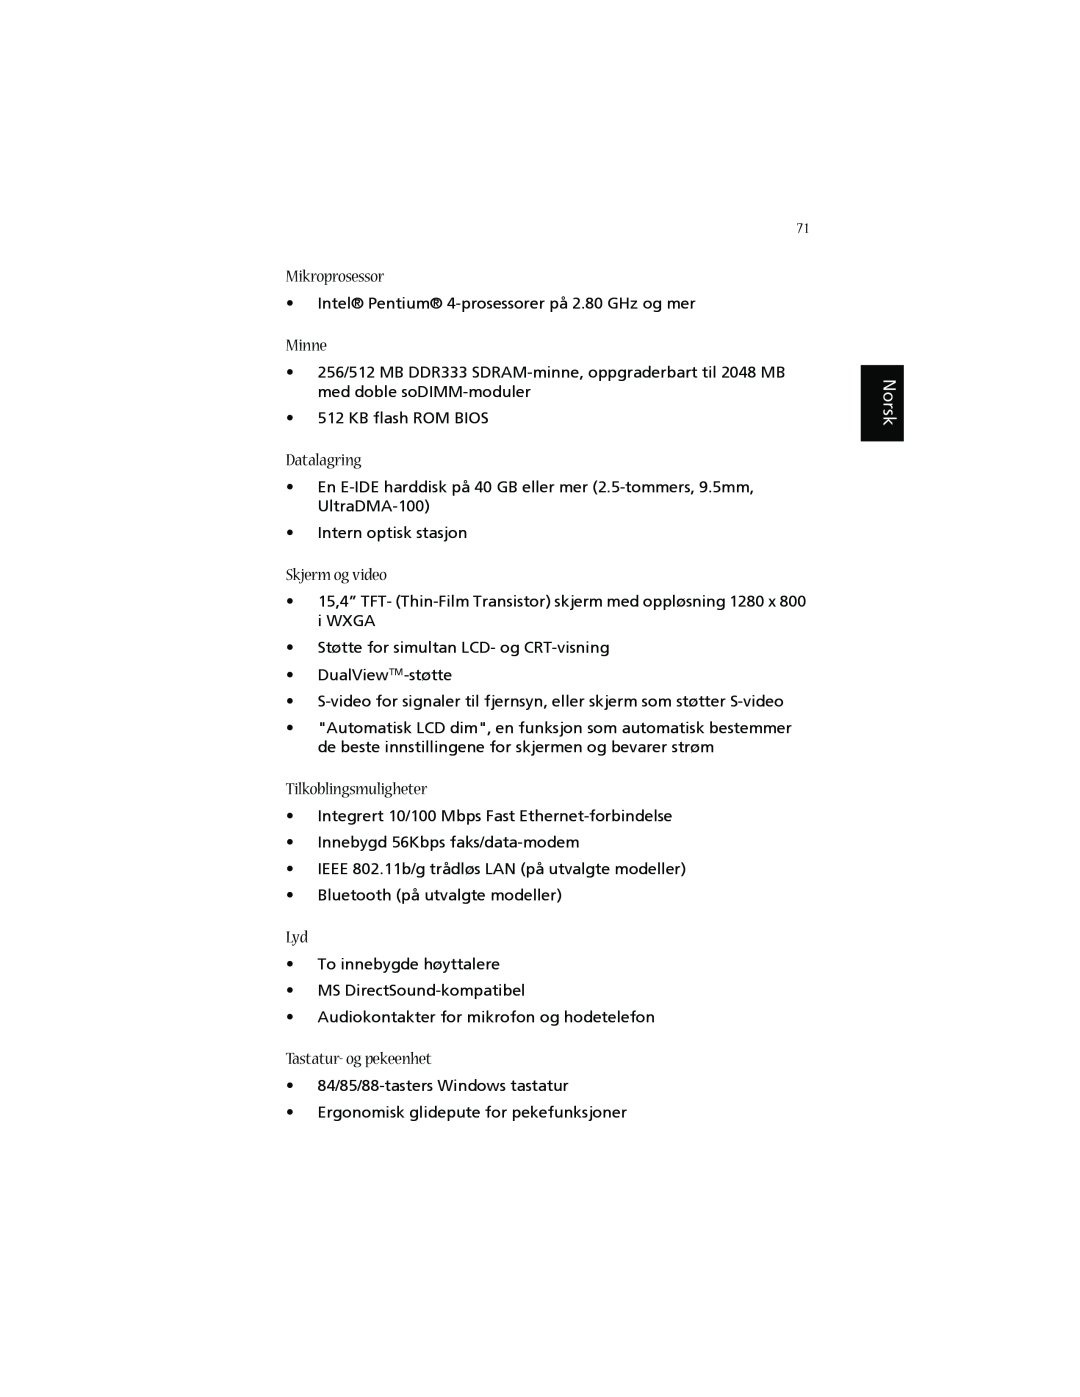 Acer 1660 manual Mikroprosessor, Minne, Datalagring, Skjerm og video, Tastatur- og pekeenhet, Tilkoblingsmuligheter, Norsk 